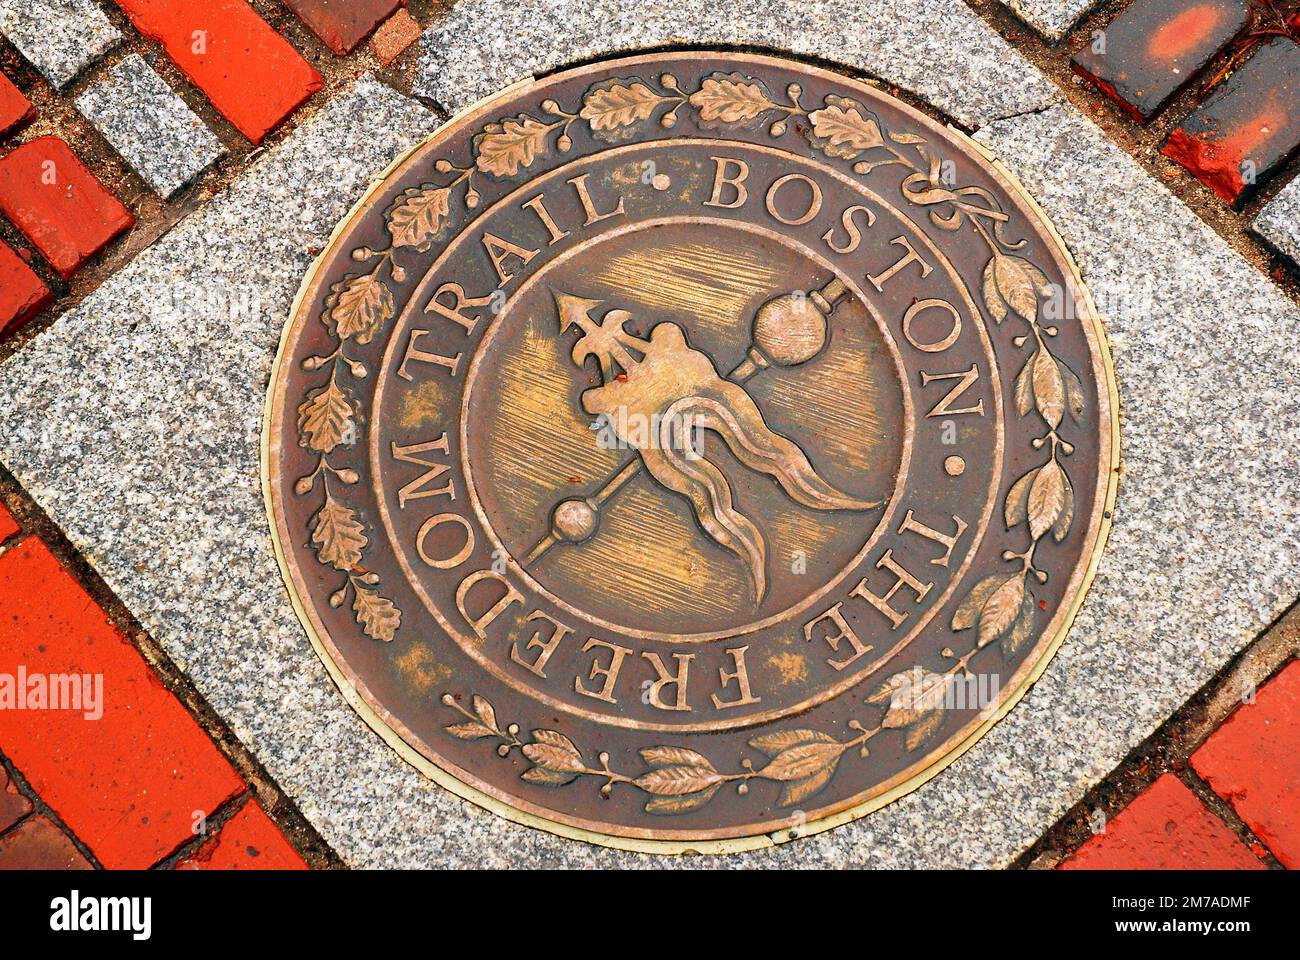 Der Freedom Trail, ein Pfad, der die historischen Stätten von Boston verbindet, ist auf dem Gehweg mit einer kreisförmigen Markierung gekennzeichnet Stockfoto